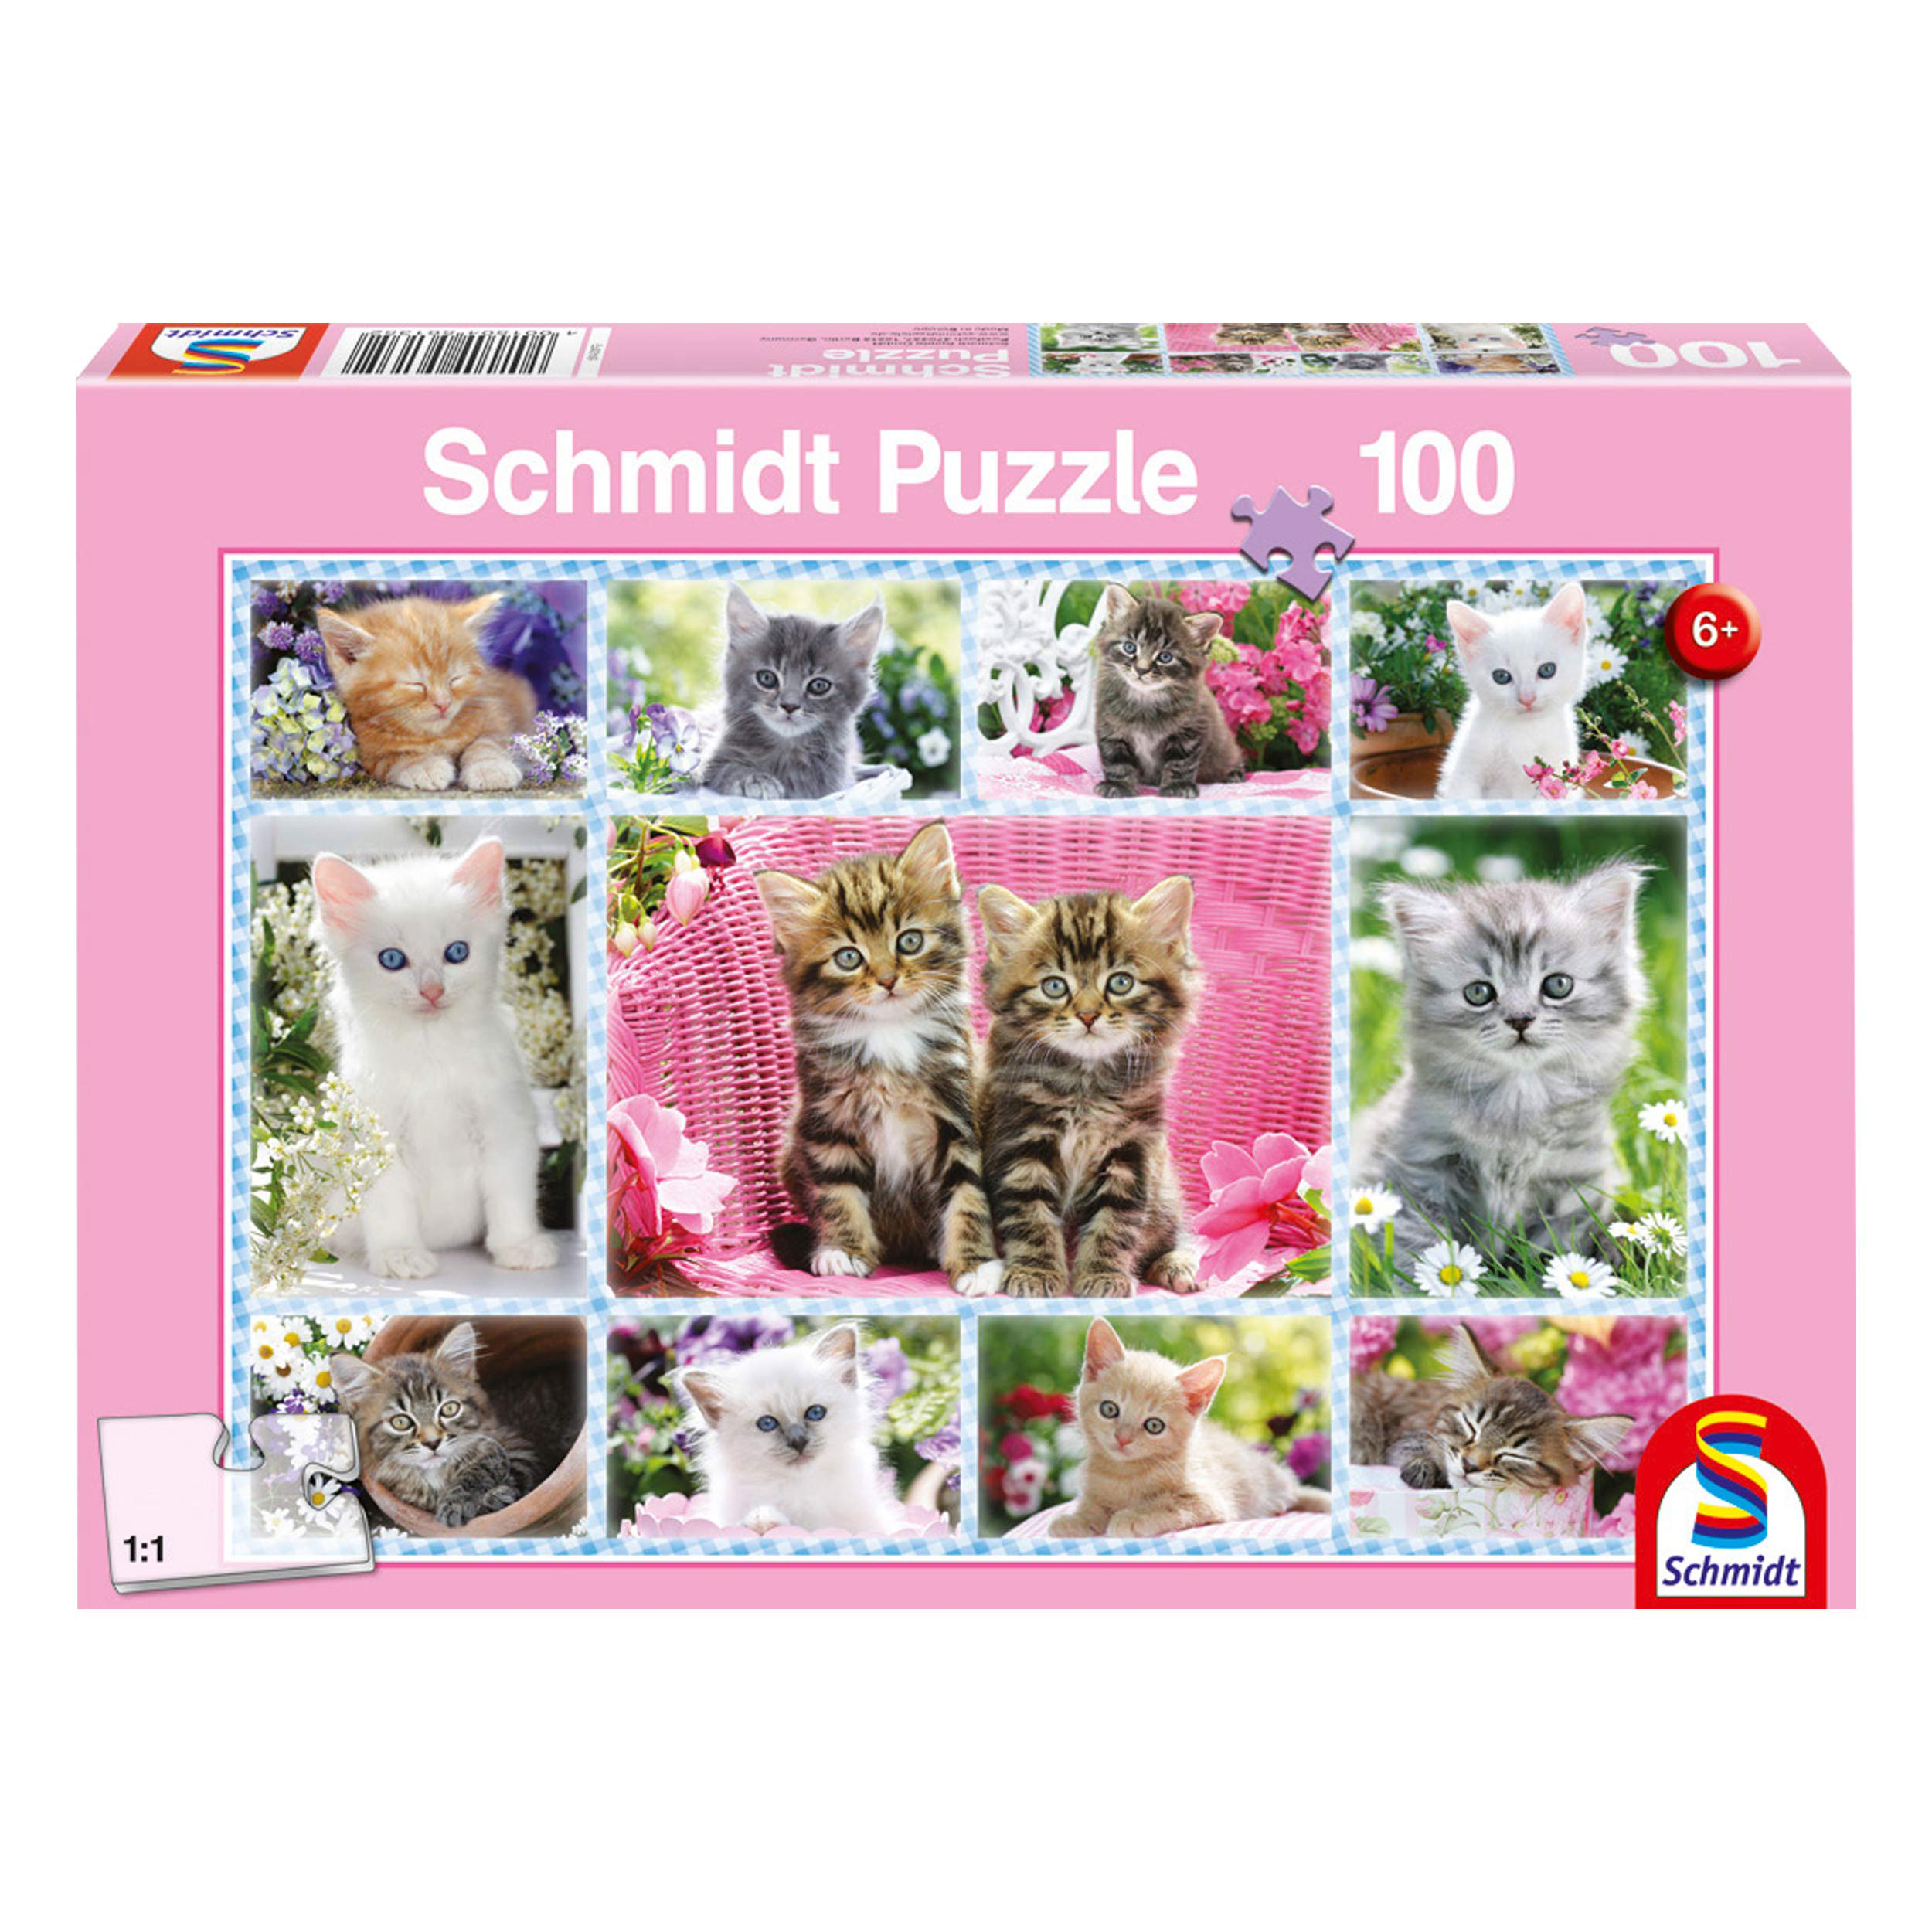 SCHMIDT SPIELE Katzenbabys - 100 Puzzle Puzzle Teile